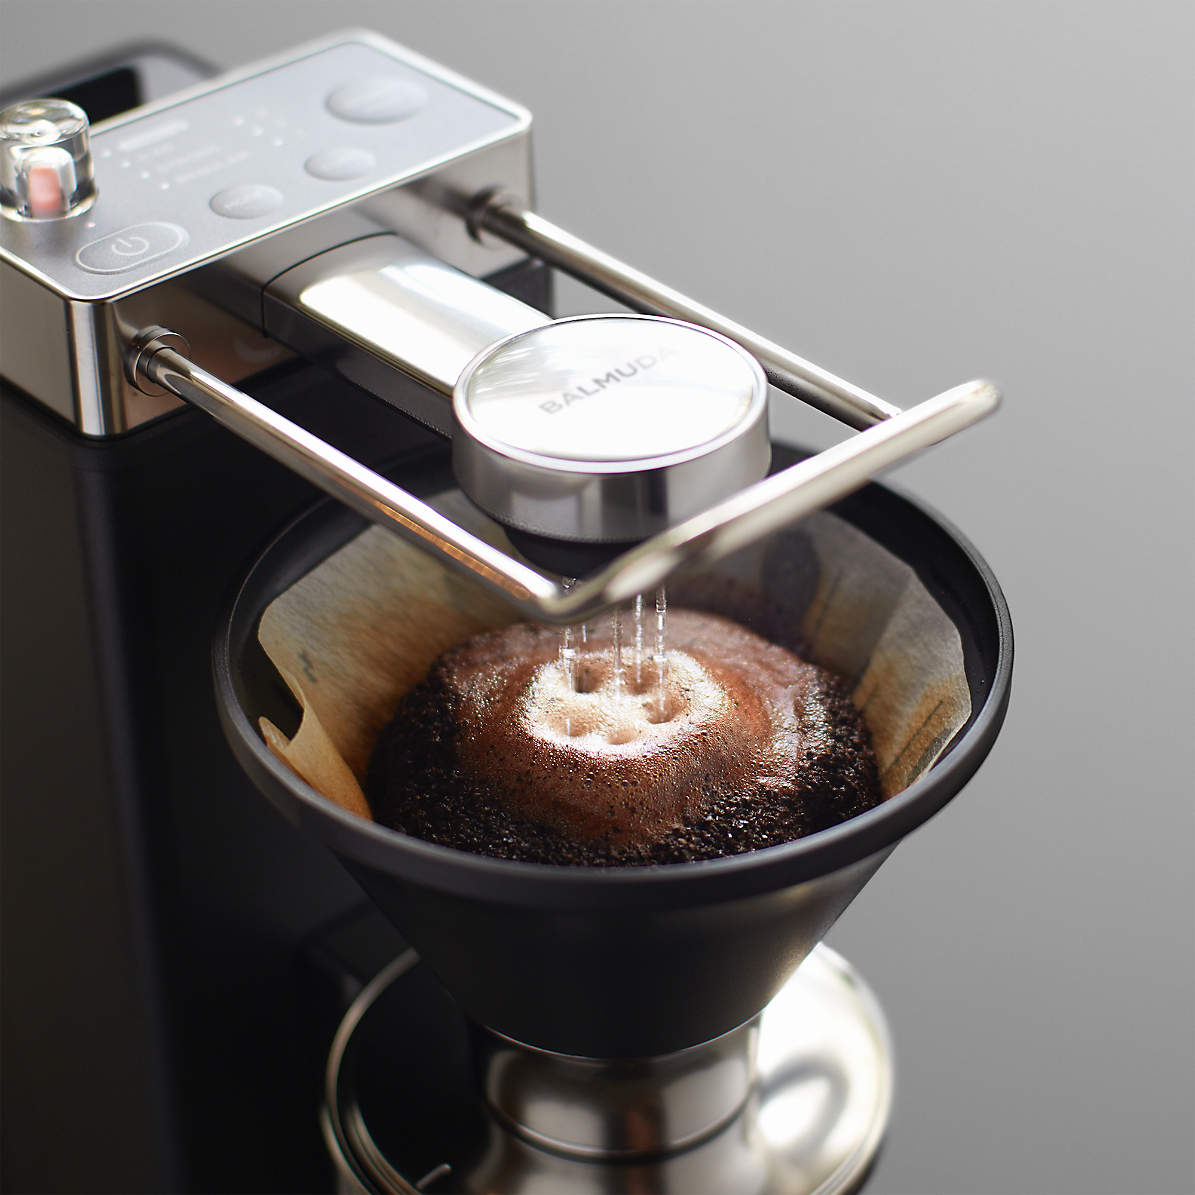 BALMUDA The Brew Coffee Maker | Crate & Barrel